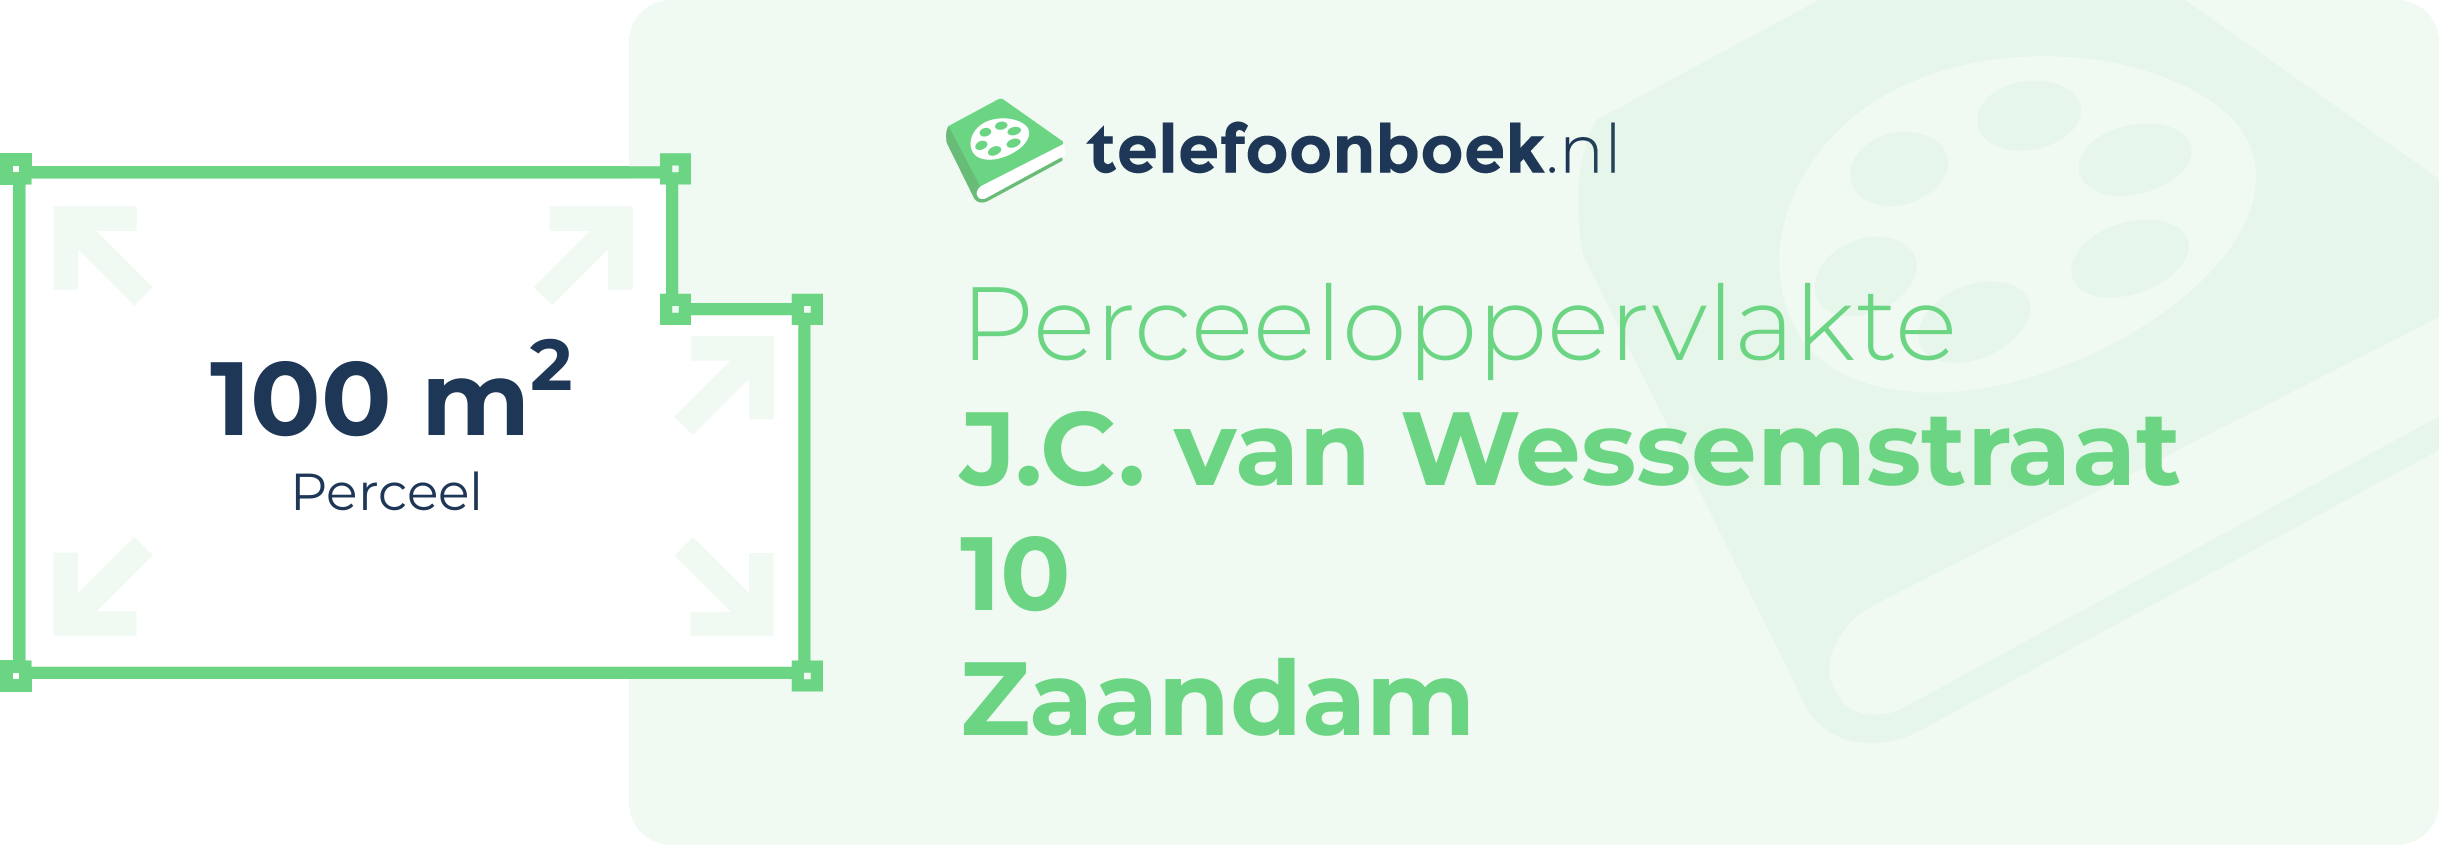 Perceeloppervlakte J.C. Van Wessemstraat 10 Zaandam